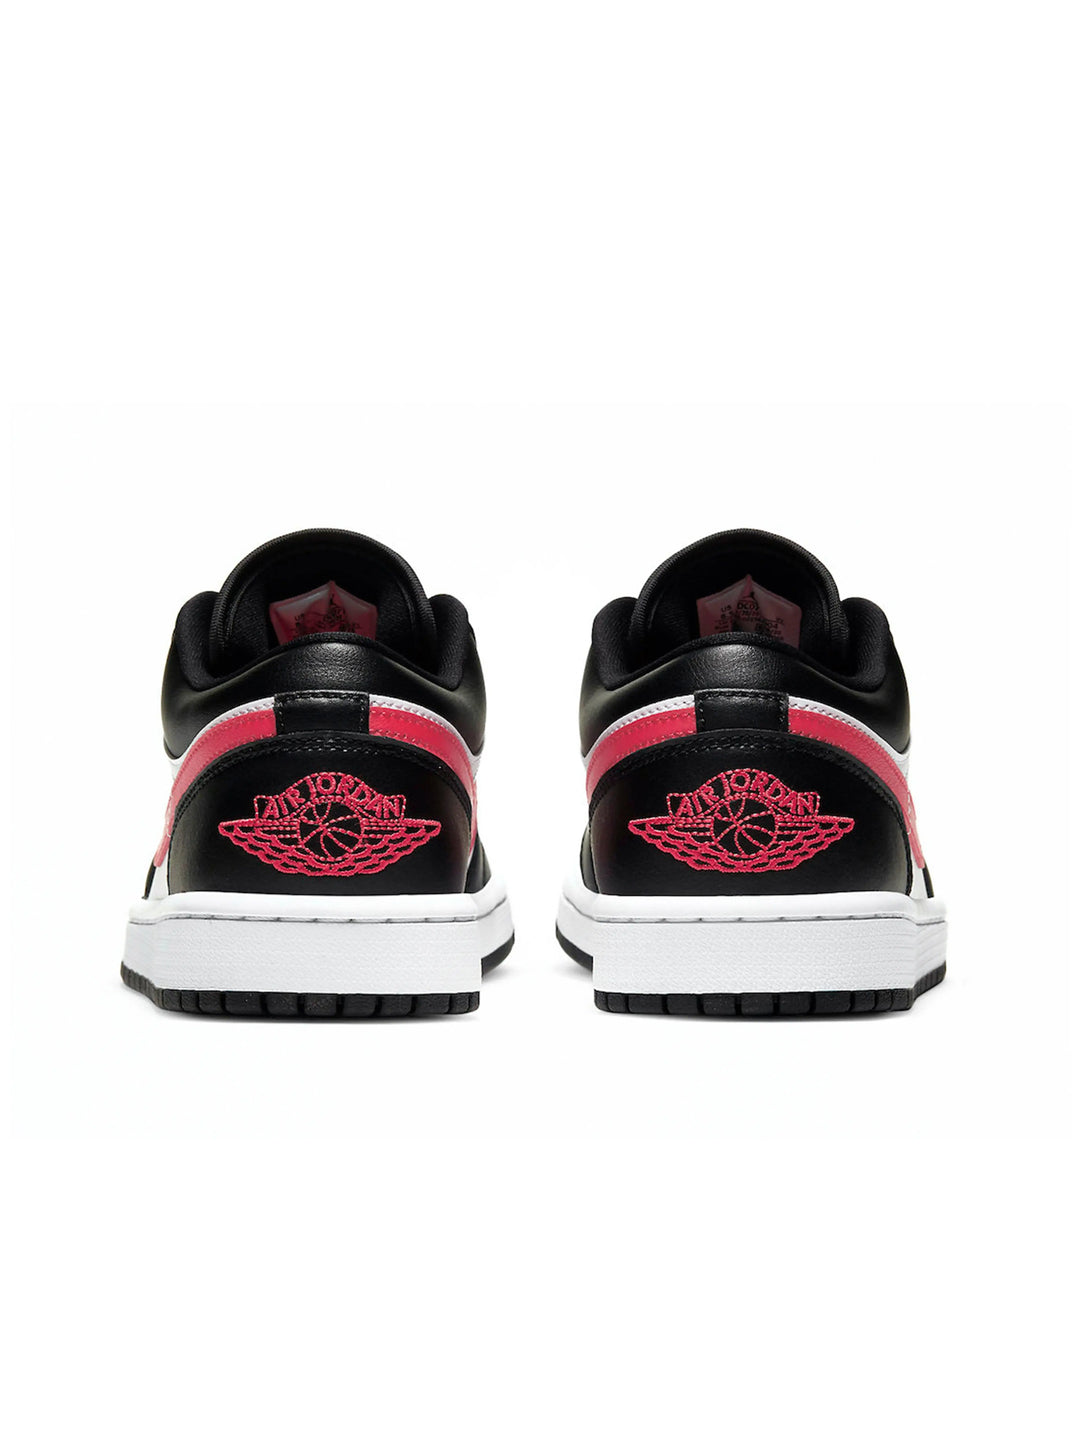 Nike Air Jordan 1 Low Siren Red [W] Prior